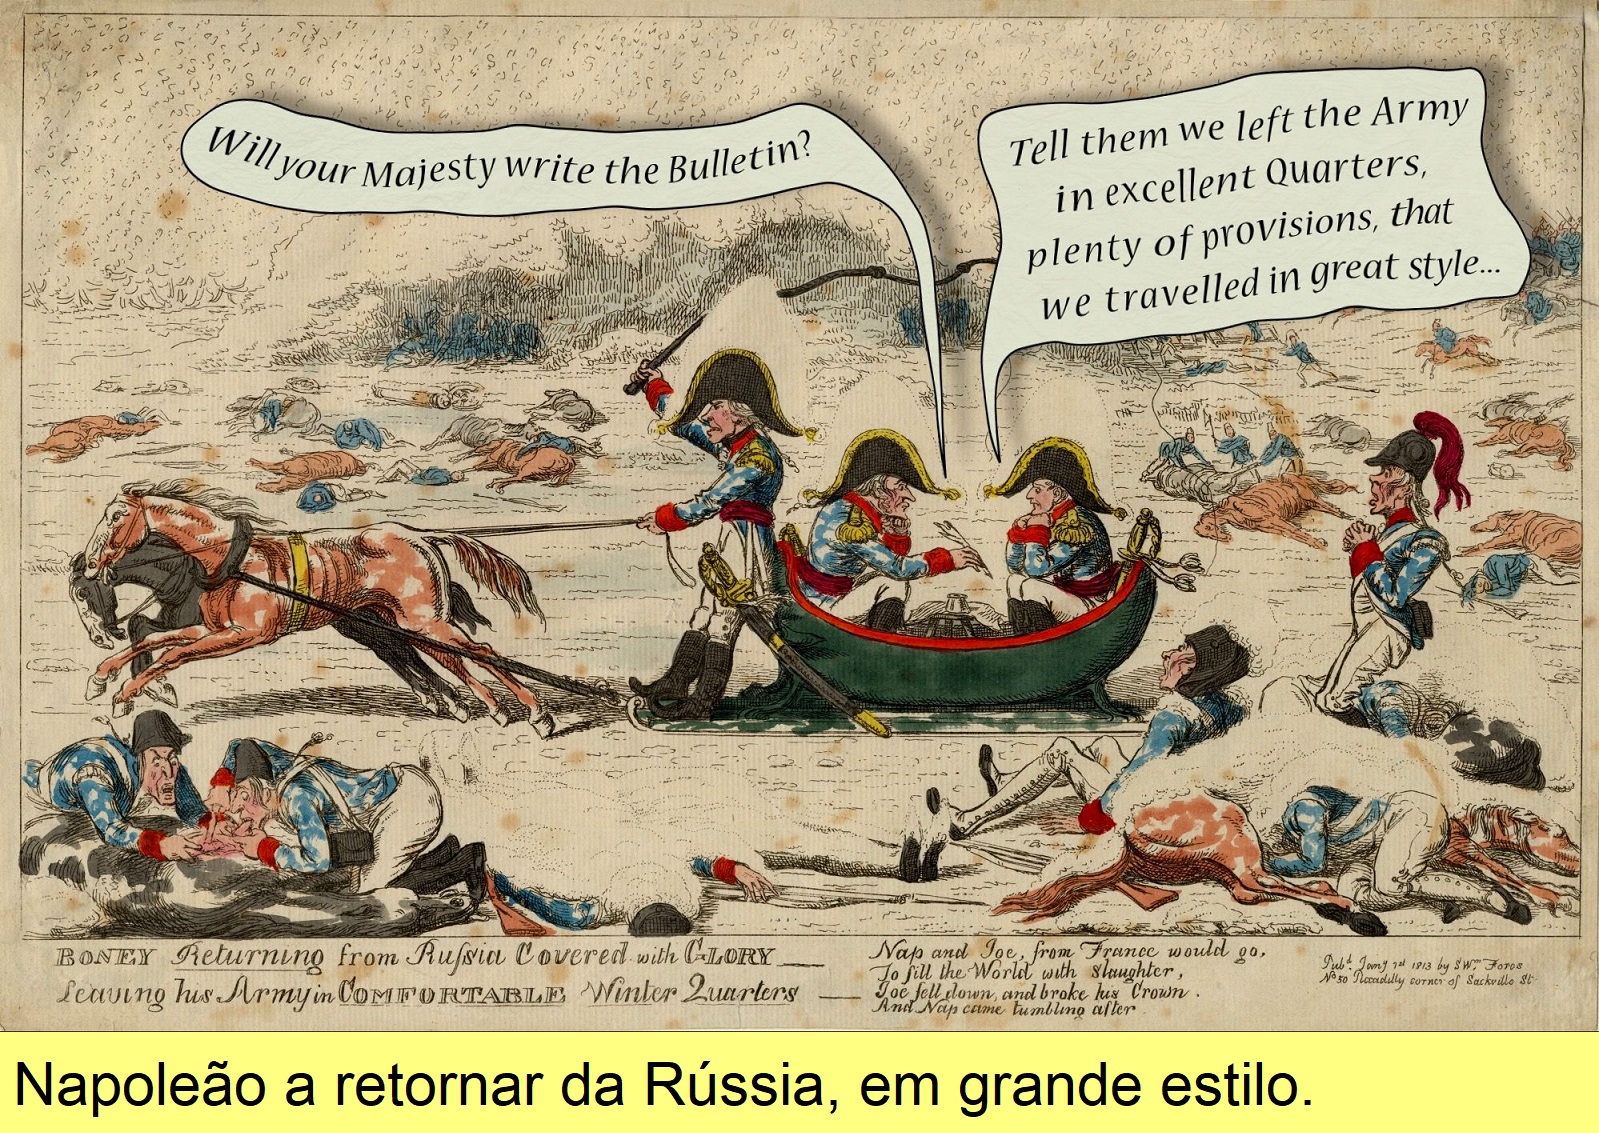 Retorno de Napoleão da Rússia, cartoon do séc. XIX.